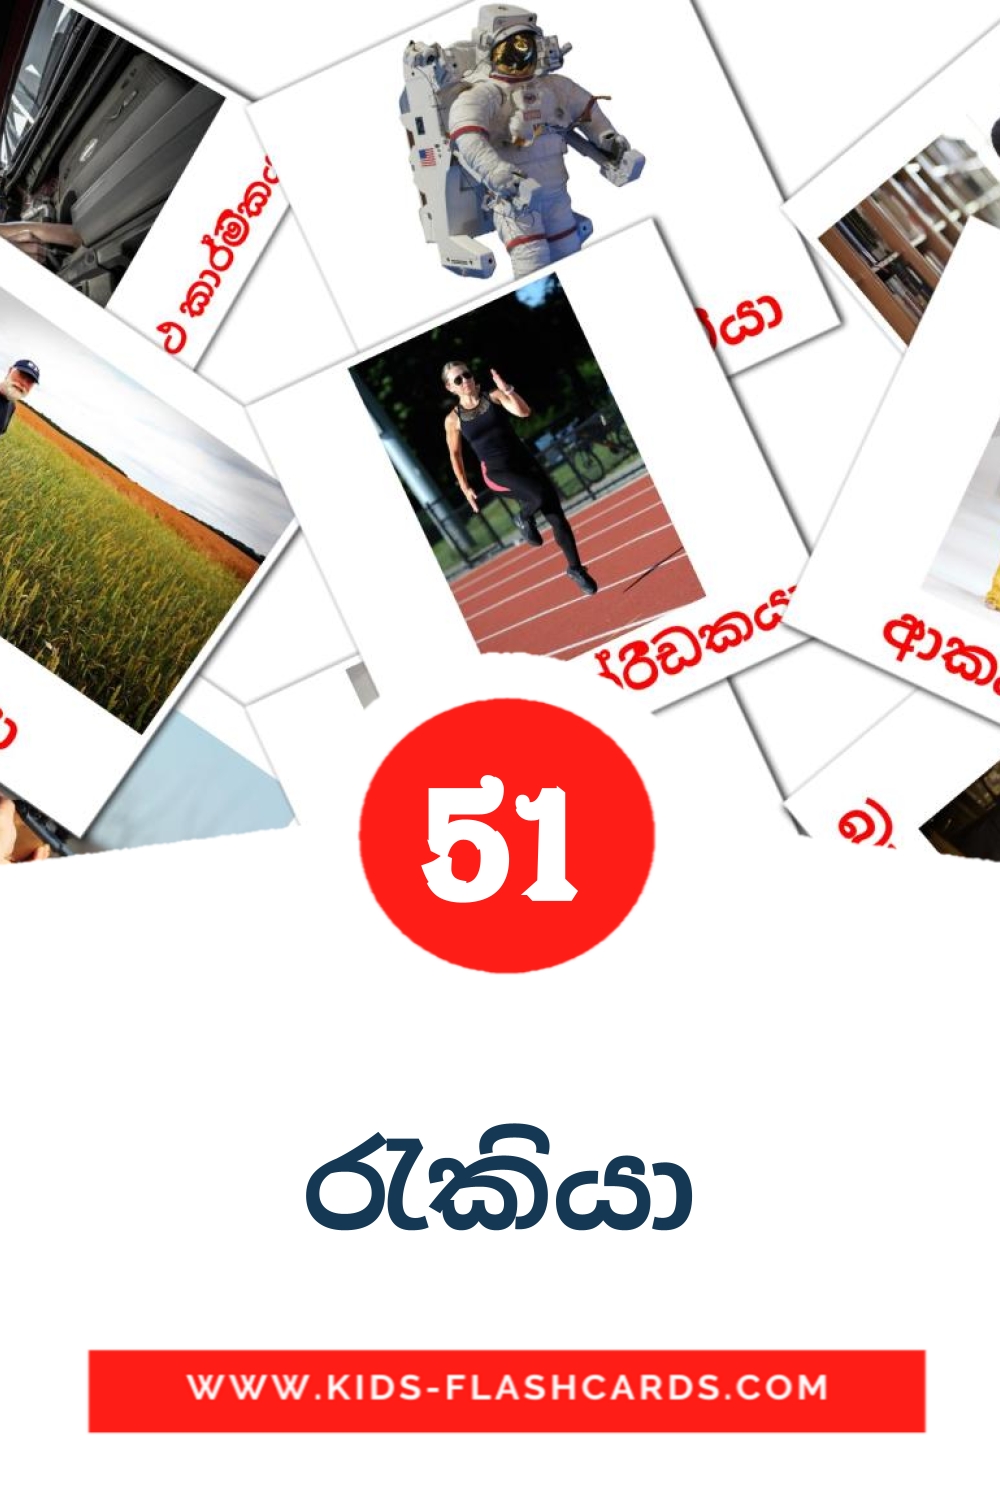 51 tarjetas didacticas de රැකියා para el jardín de infancia en sinhala